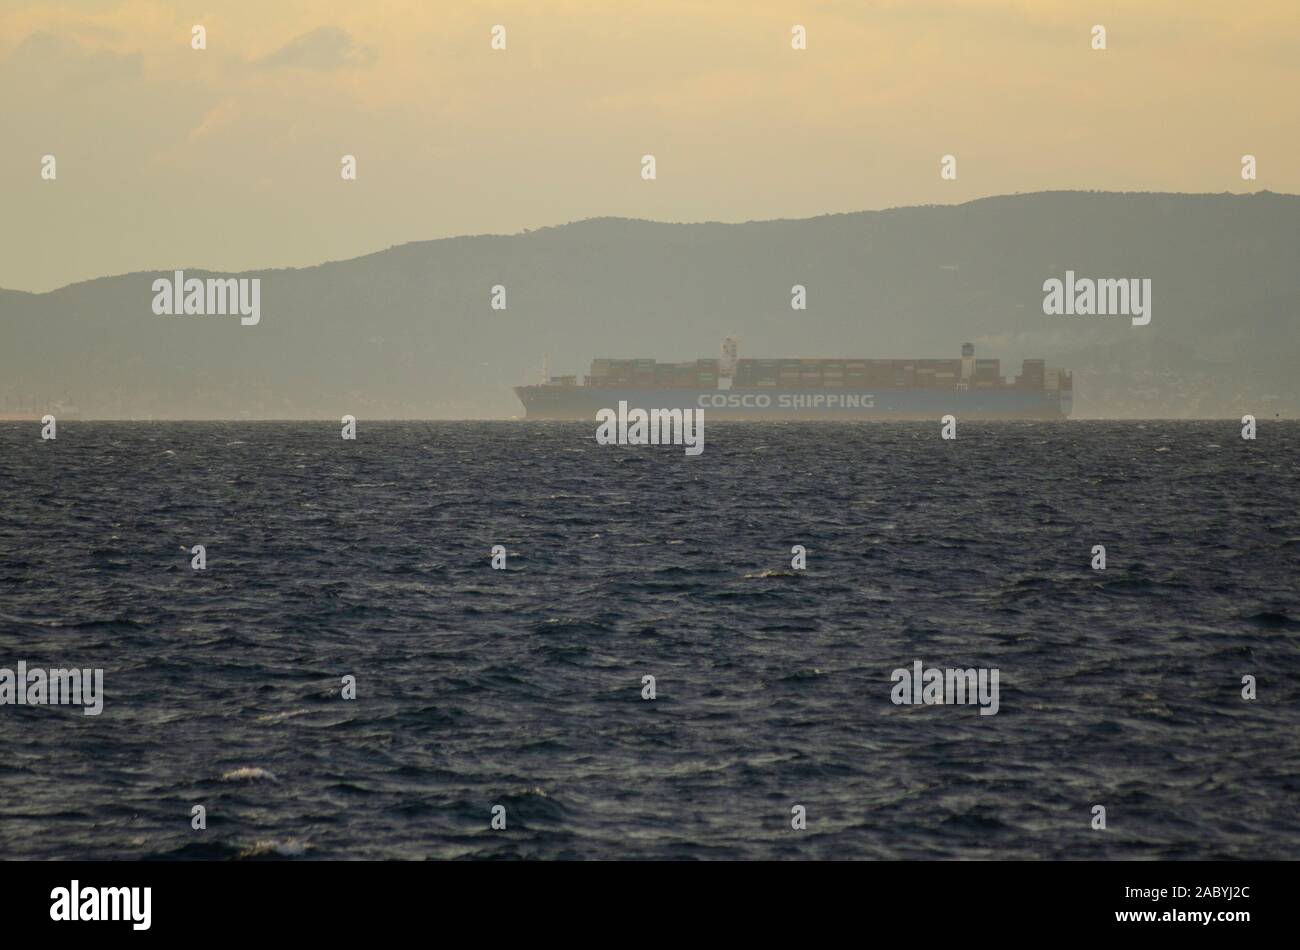 Eine große Cosco Container schiff Abfahrt ab dem Hafen von Piräus Athen Griechenland Stockfoto